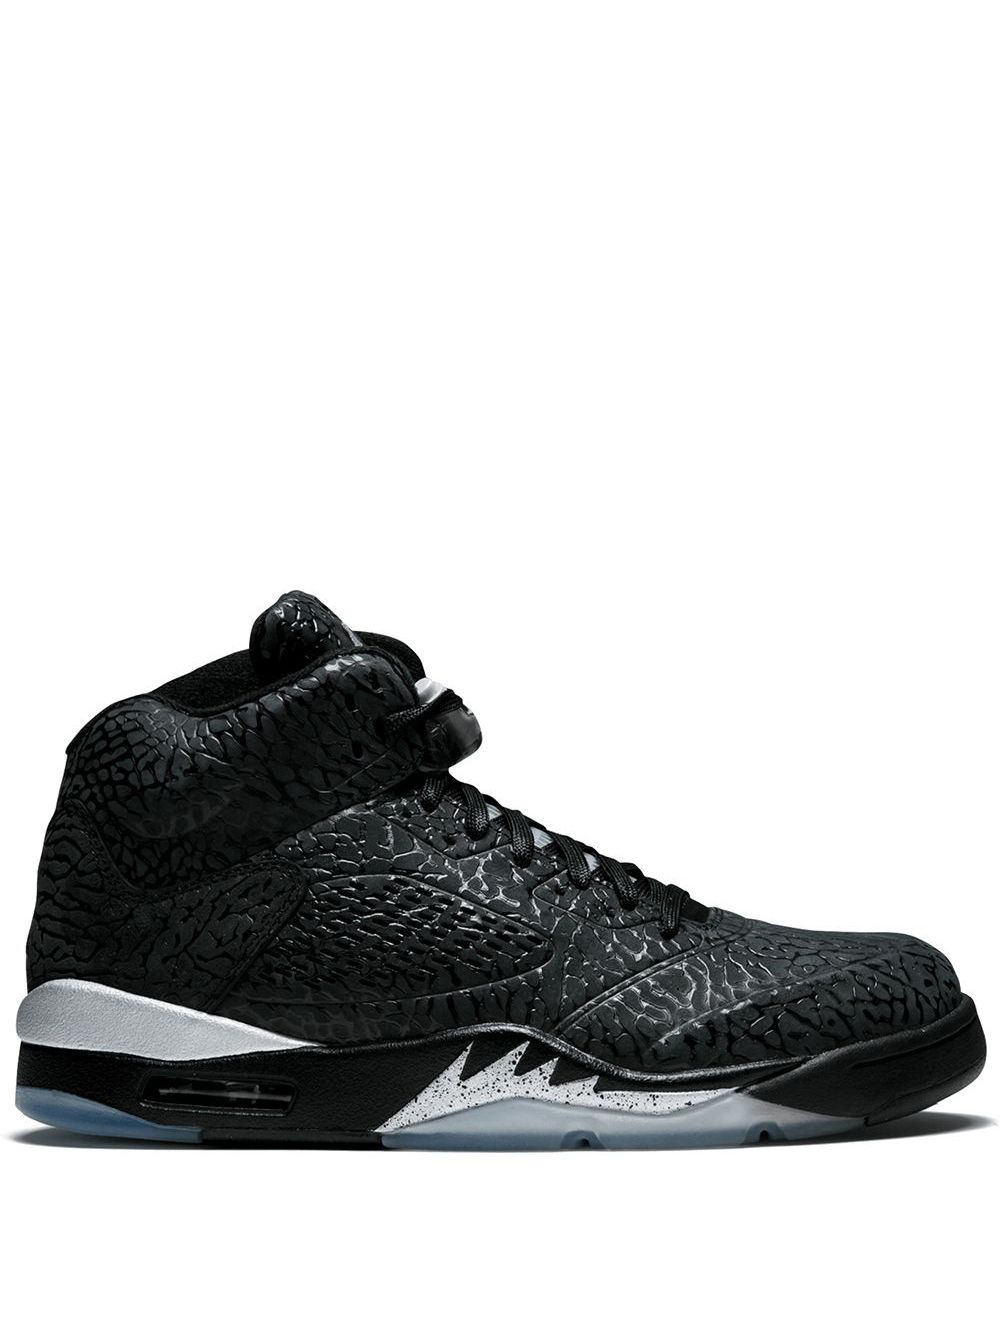 Jordan Air Jordan 3Lab5 "Black Silver" sneakers